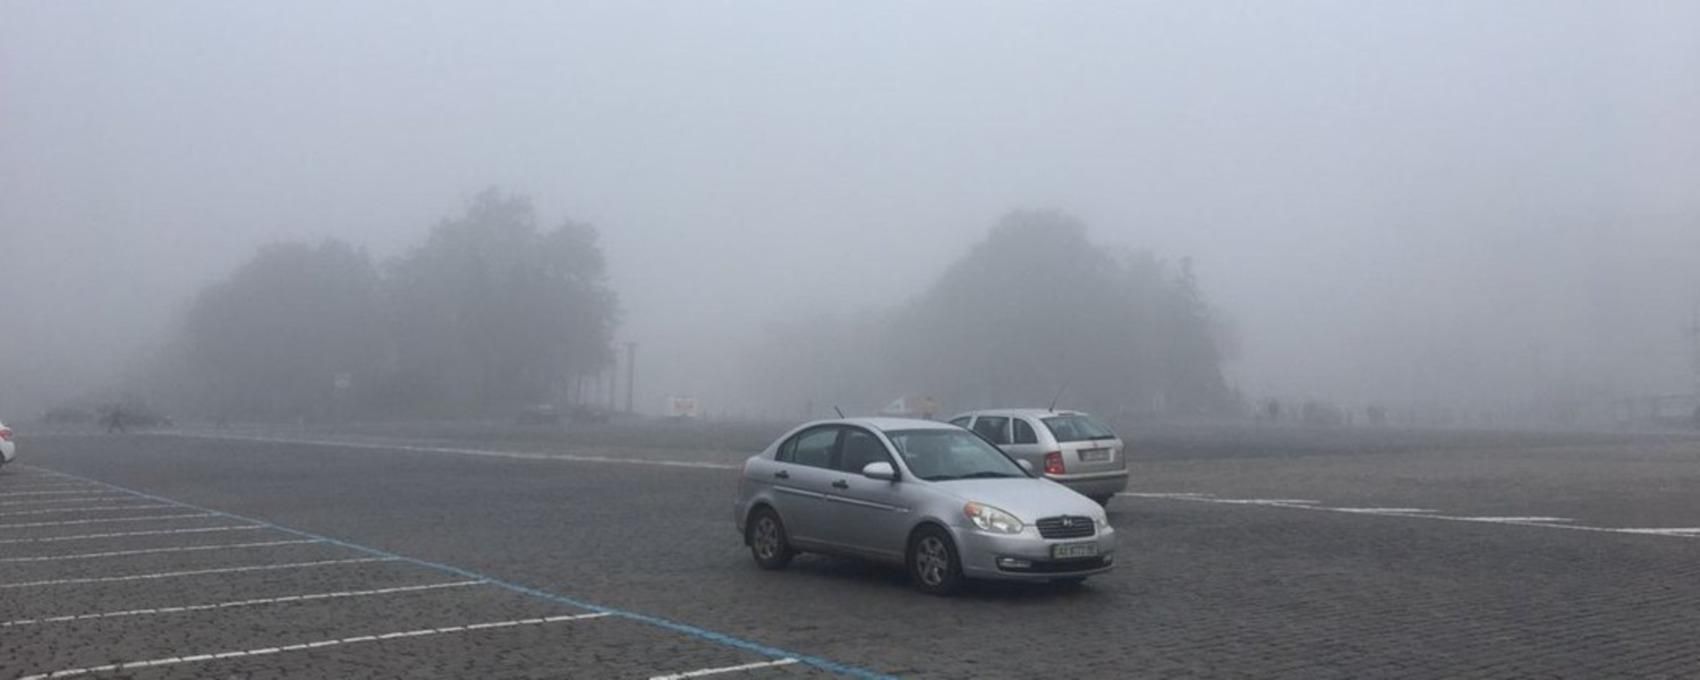 В Харькове из-за густого тумана задерживают авиарейсы: фото, видео